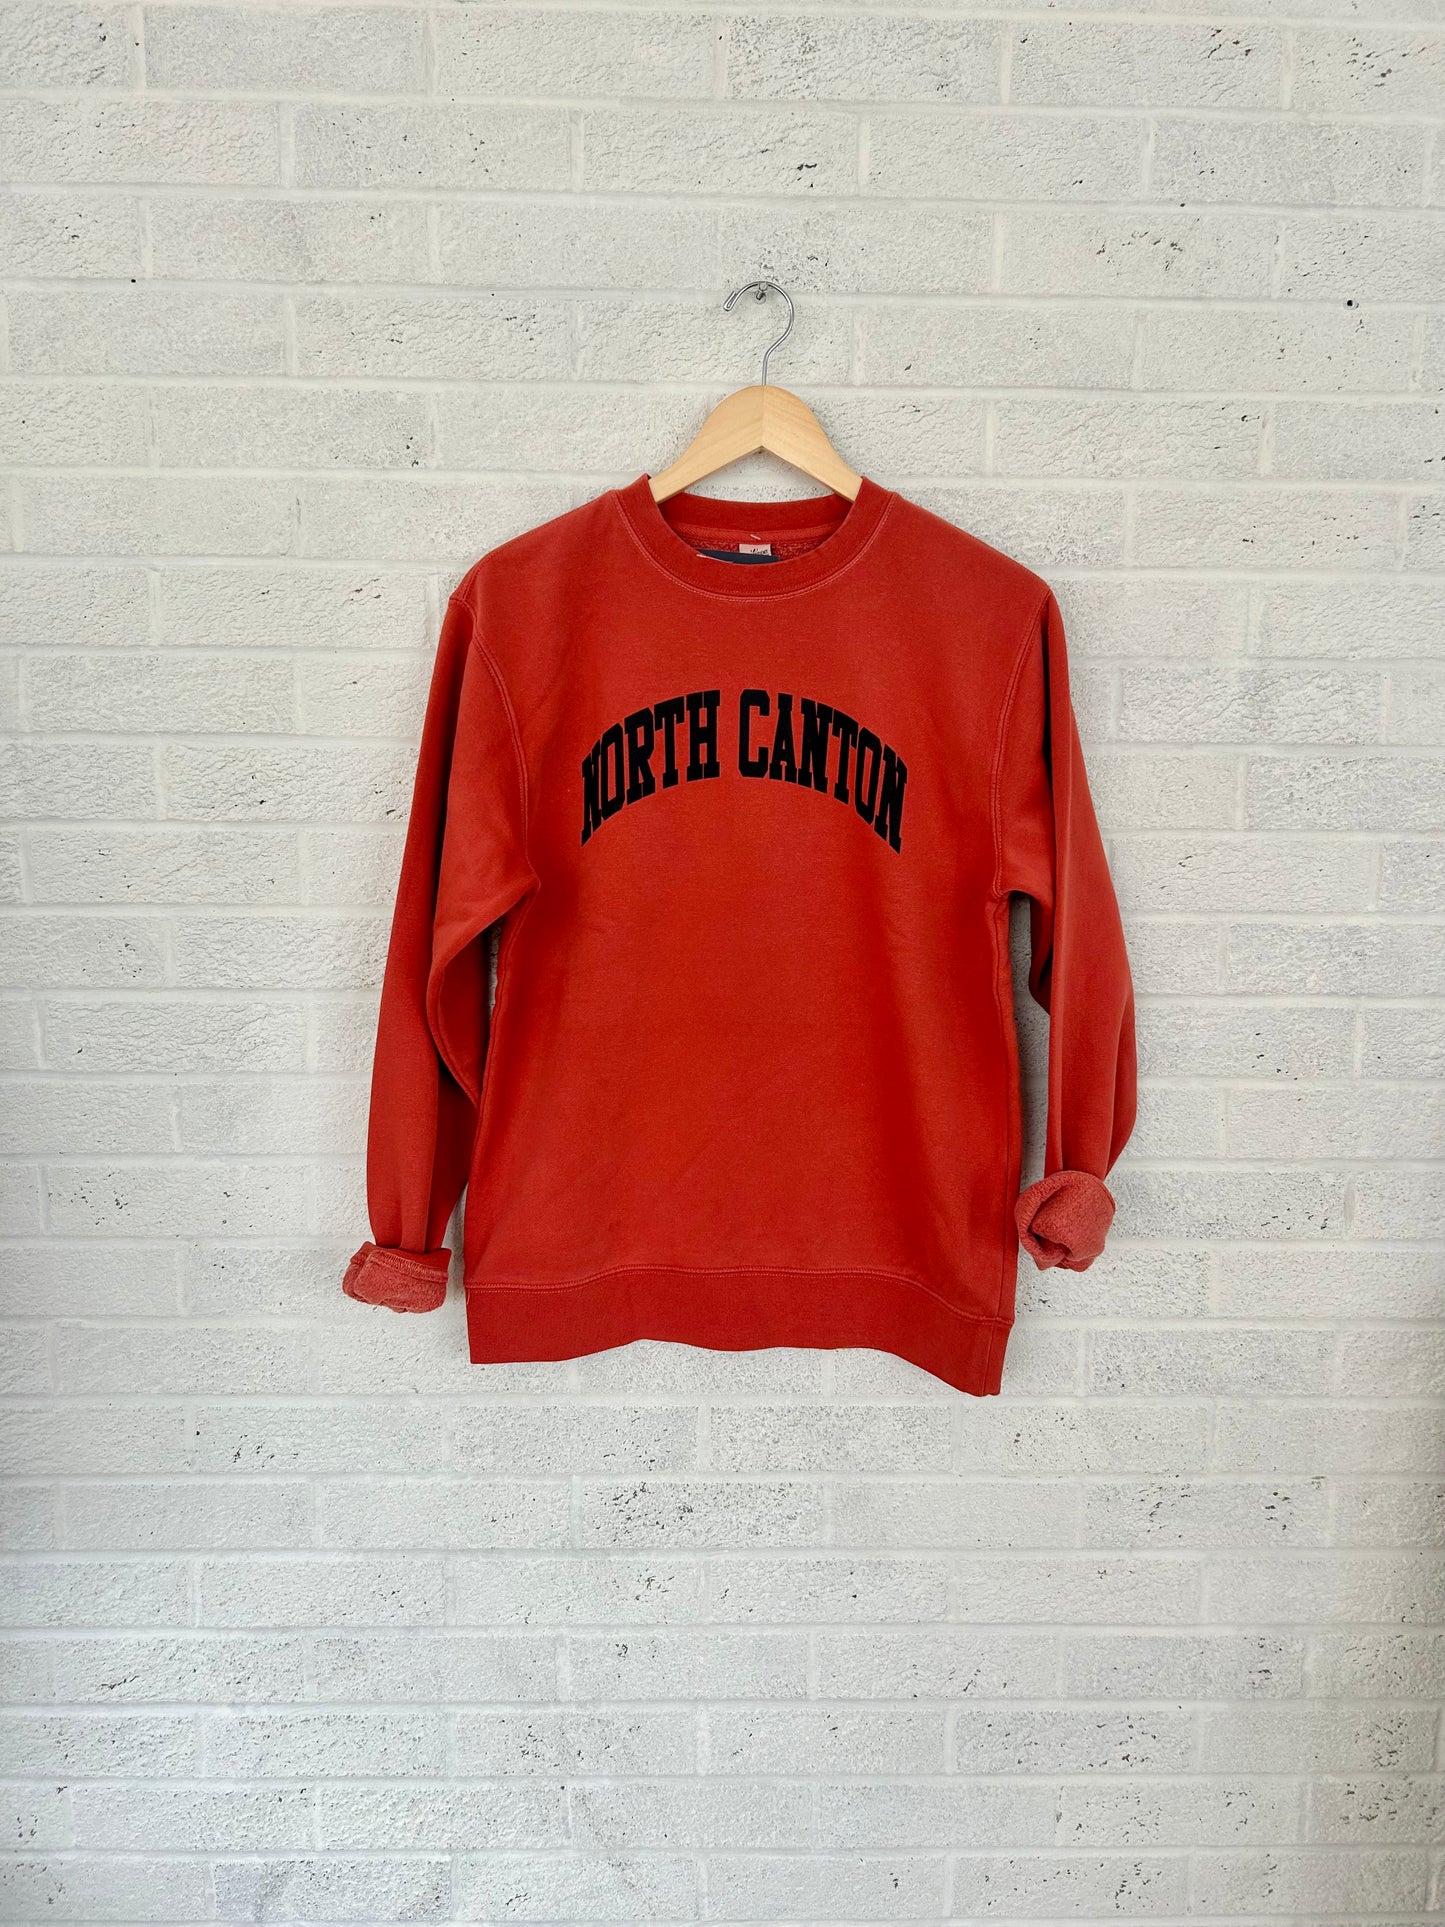 North Canton Arch Vintage Adult Sweatshirt